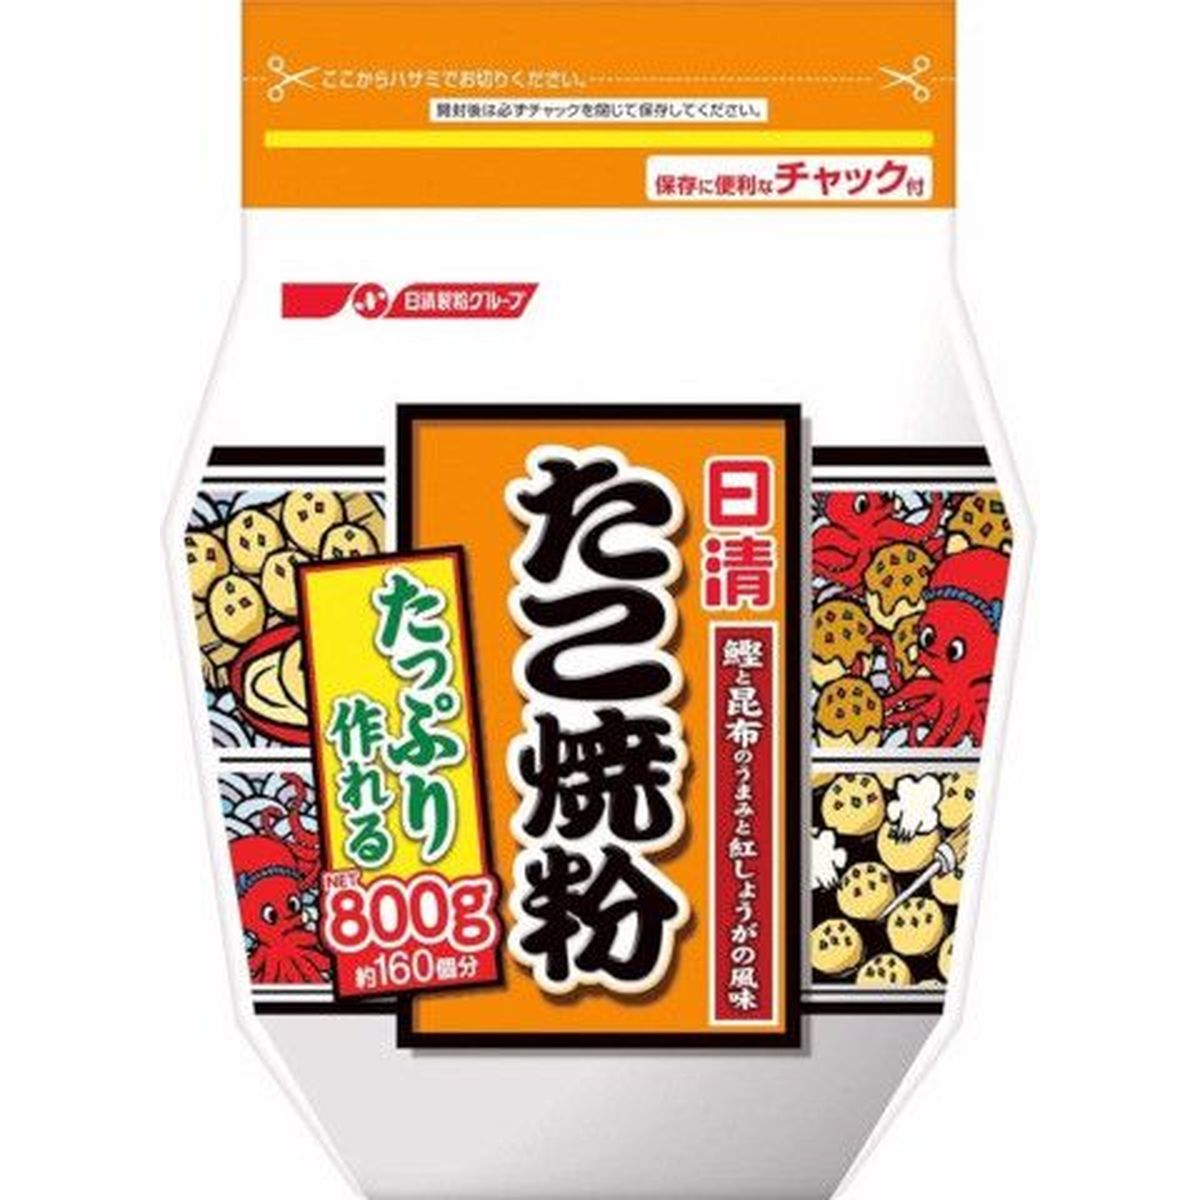 【9個入リ】日清フーズ タコ焼粉 800g